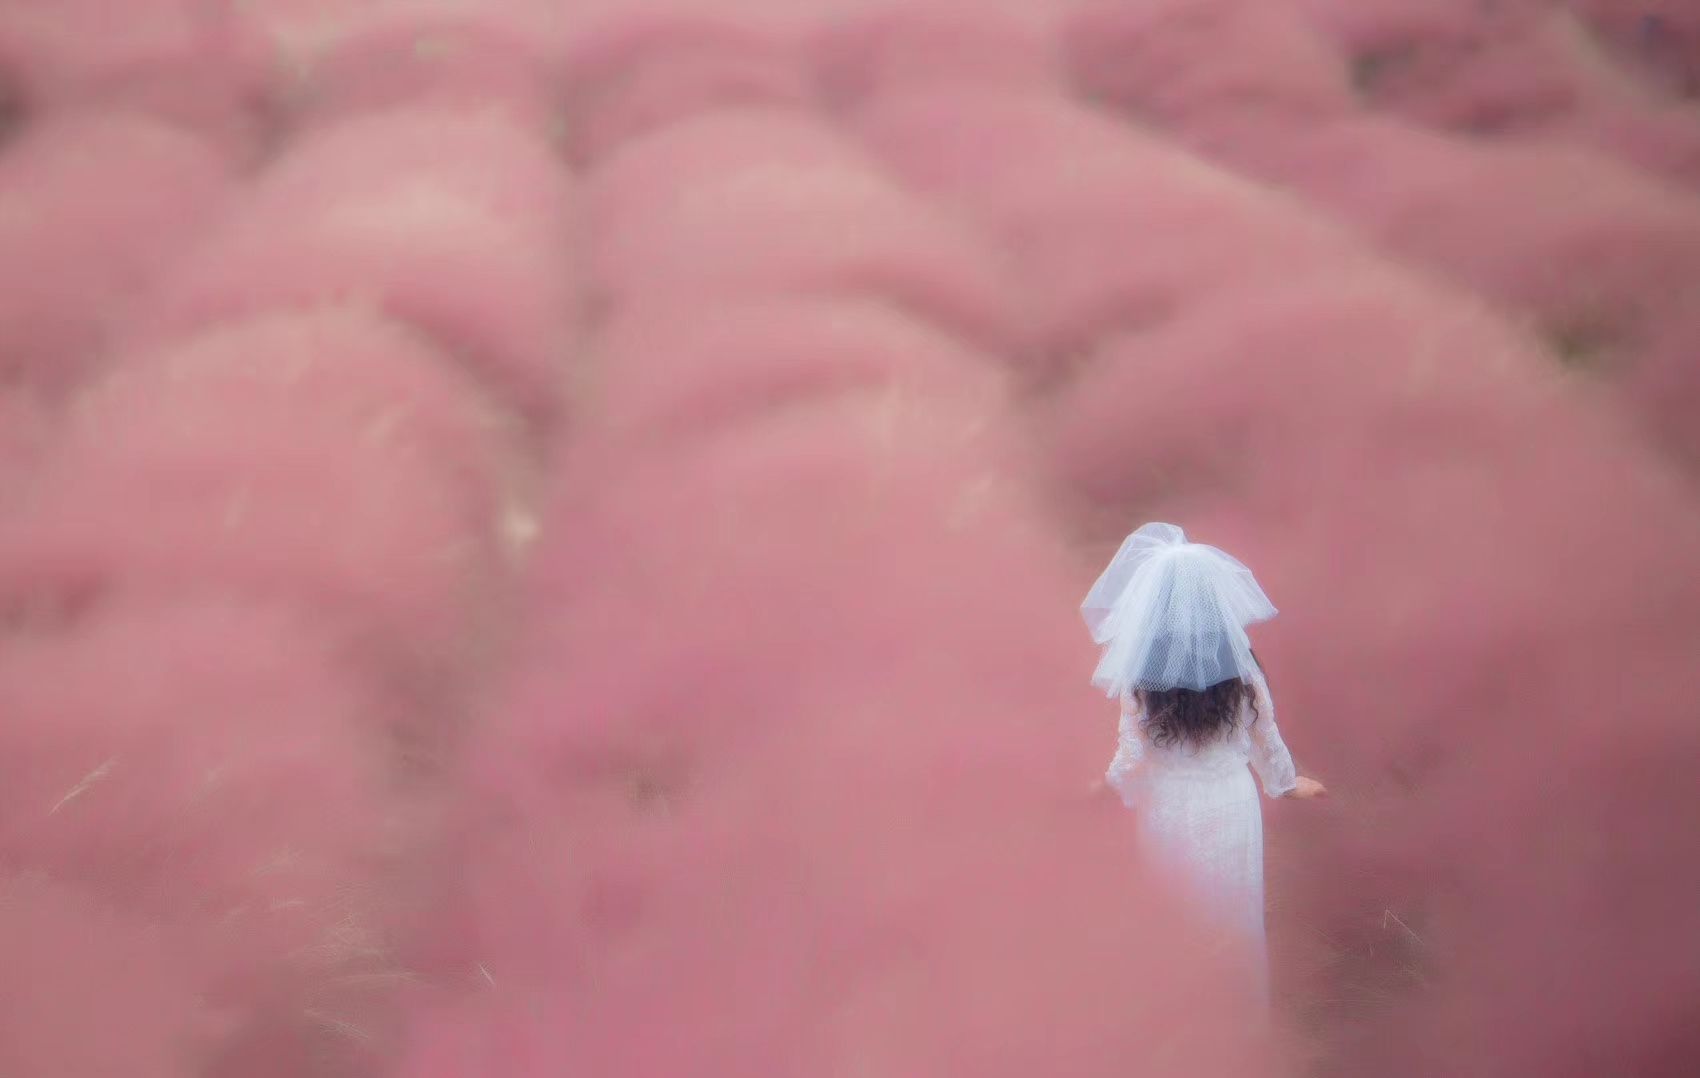 打卡常州粉黛庄园 原产于北美大草原的粉黛乱子草 常州也有了 而且超过200亩一望无际粉色花海!而且花